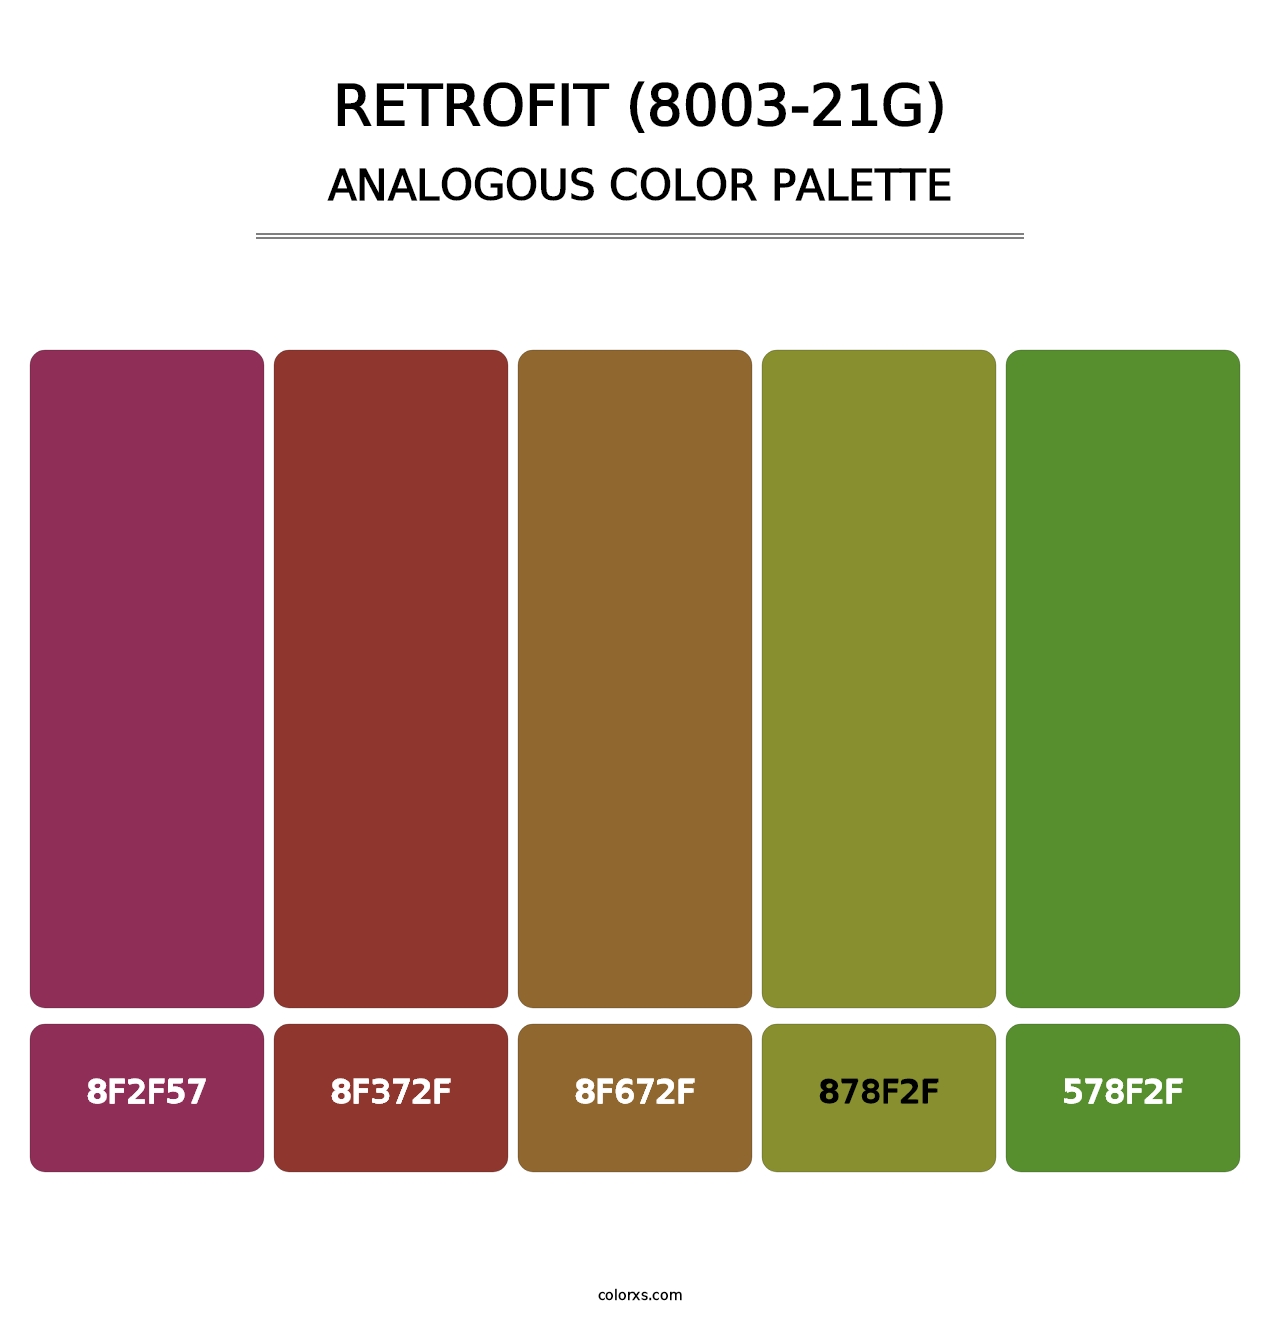 Retrofit (8003-21G) - Analogous Color Palette